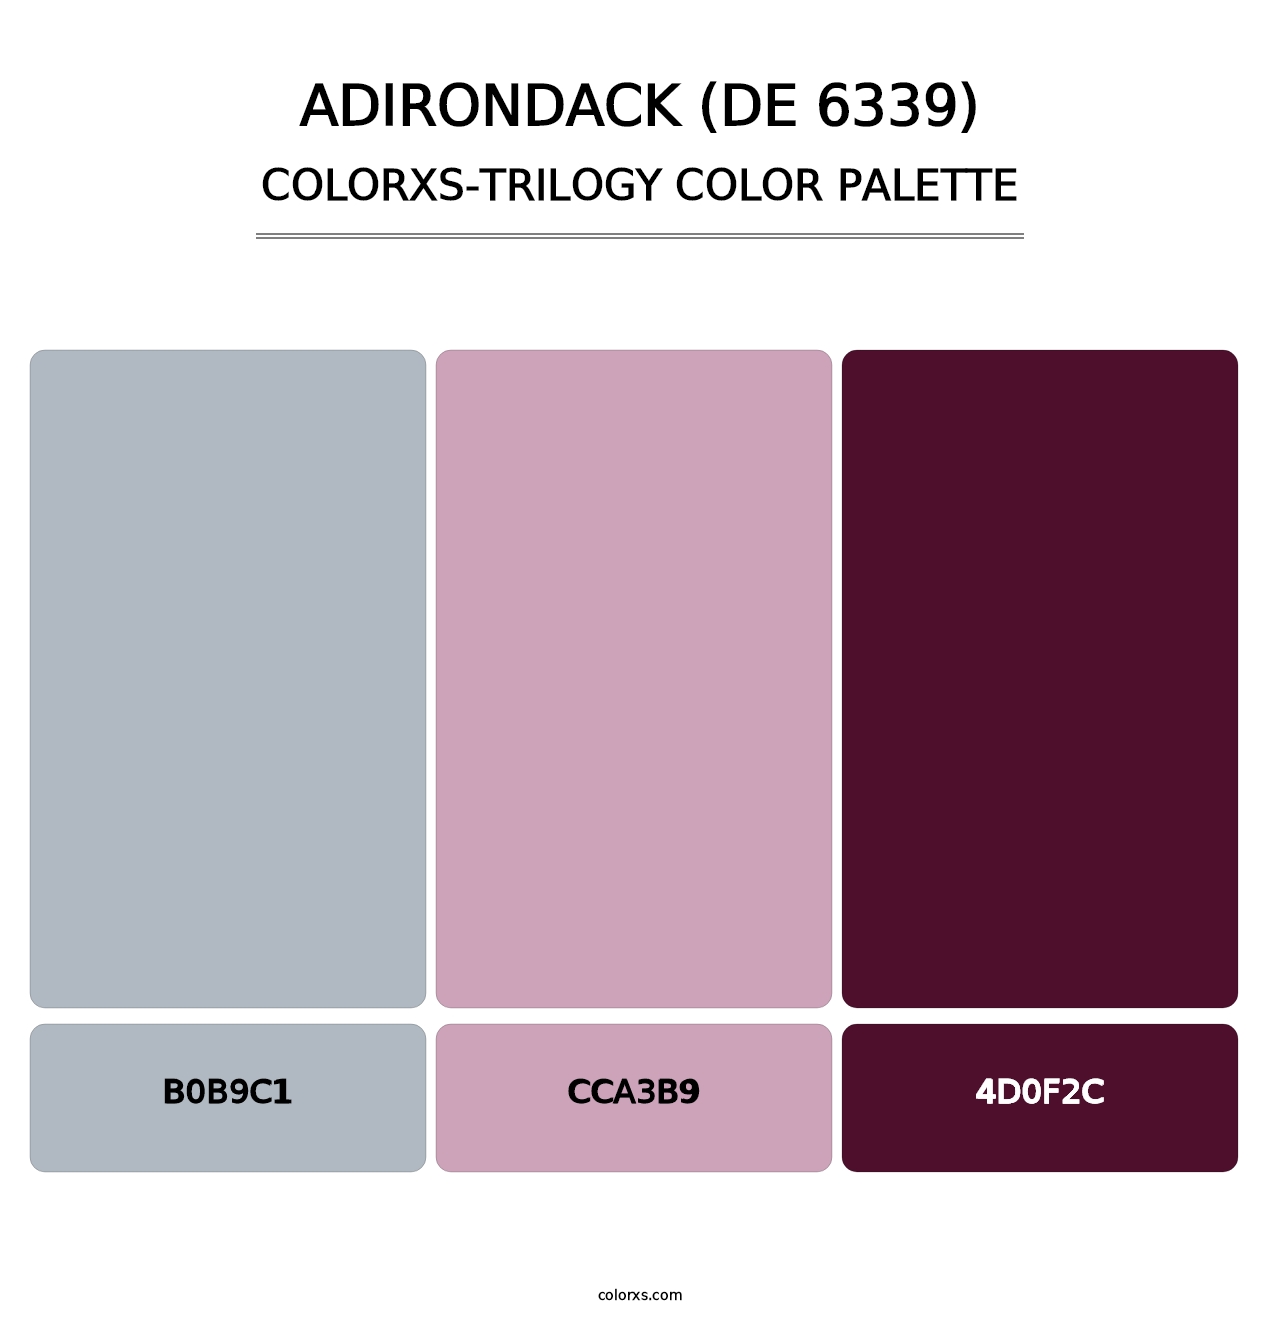 Adirondack (DE 6339) - Colorxs Trilogy Palette